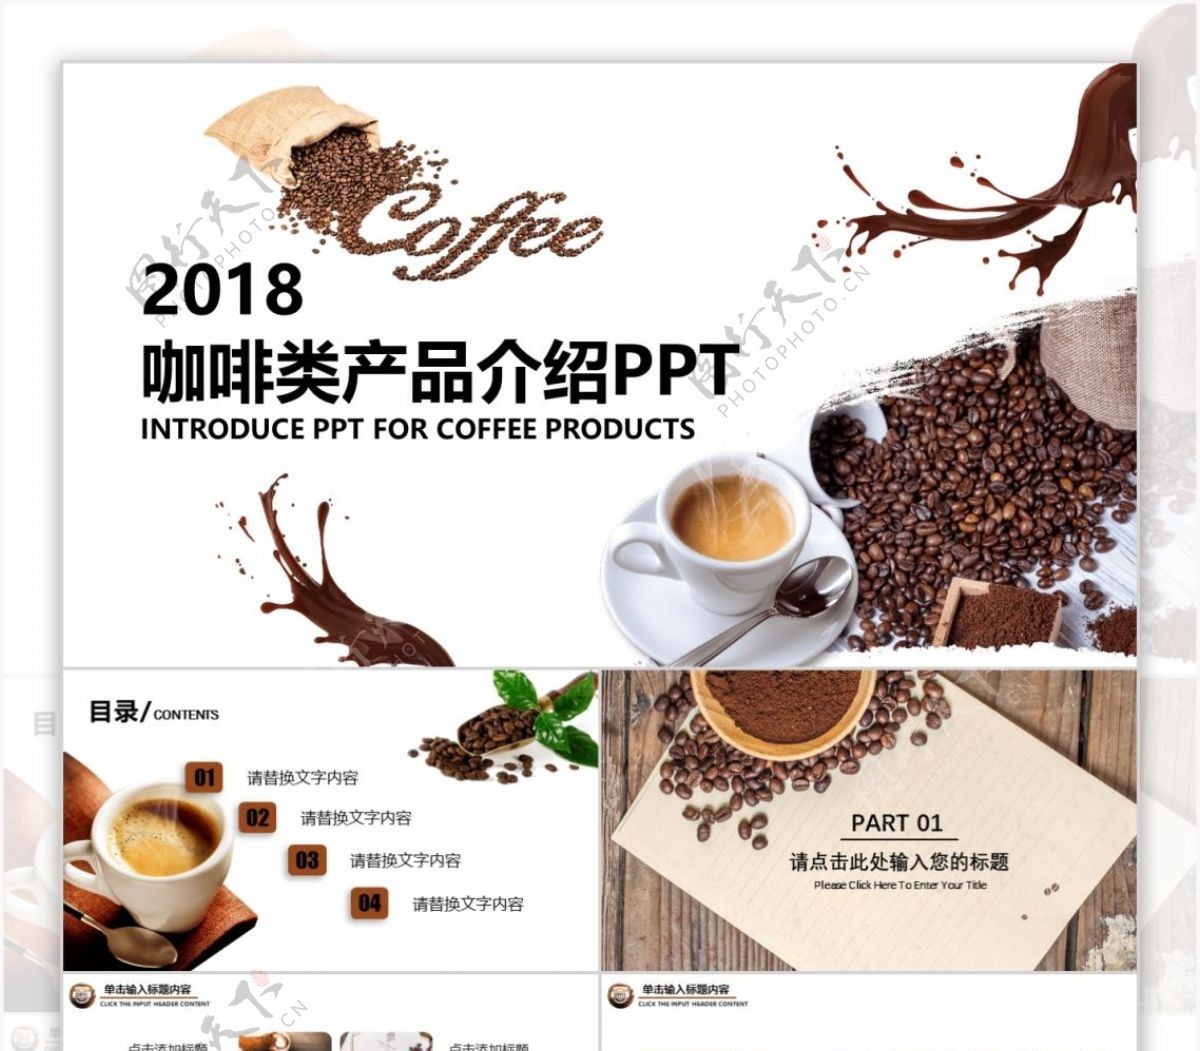 咖啡类饮品产品介绍品牌宣传推广ppt插图